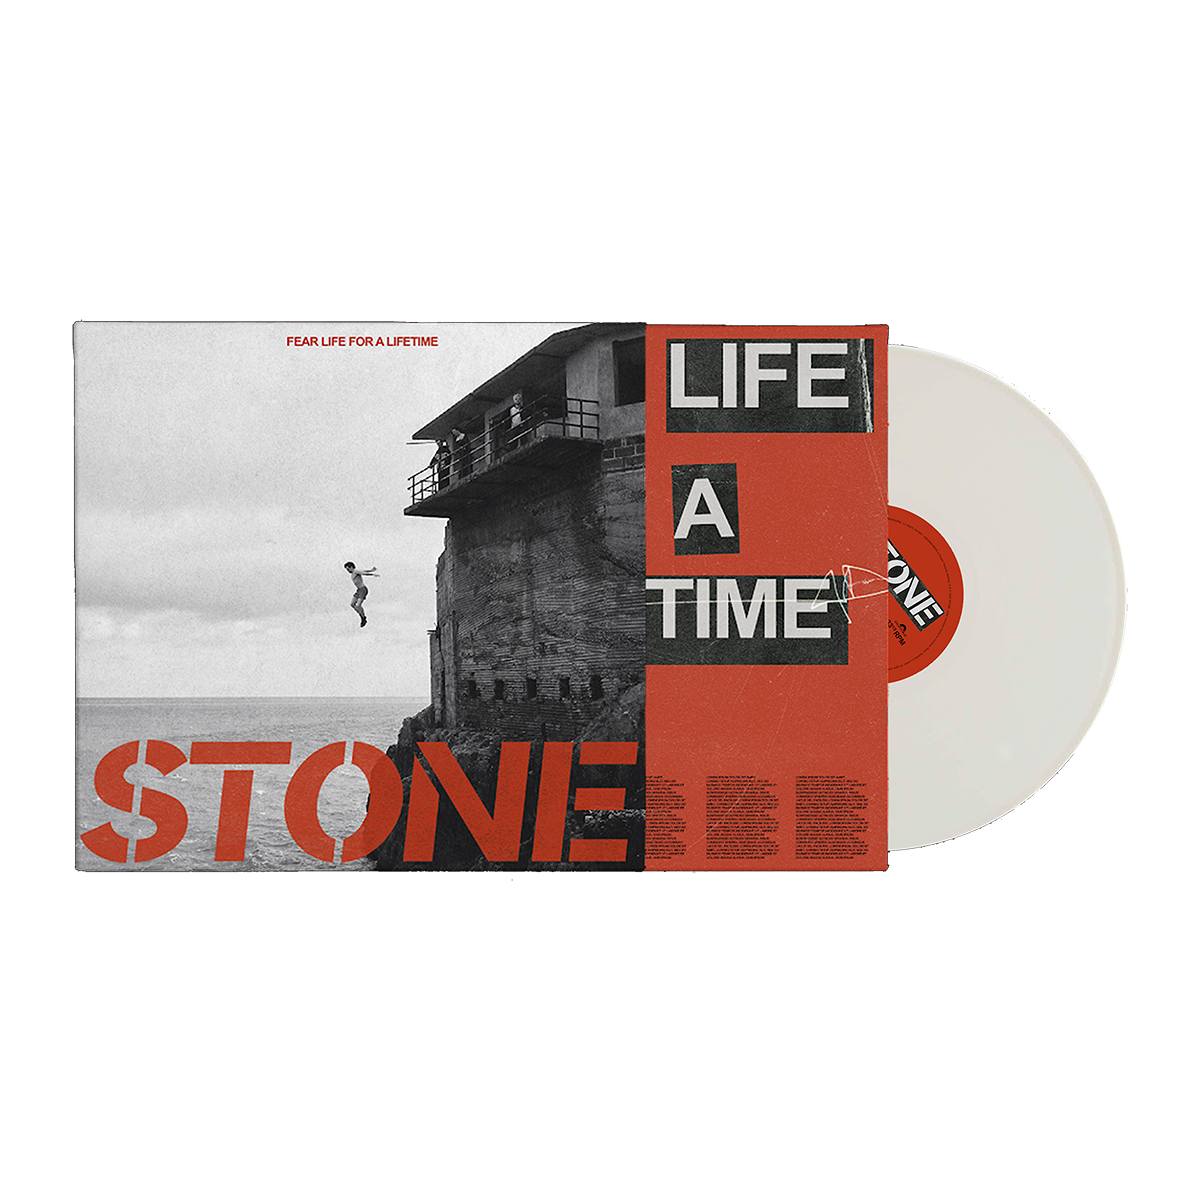 Fear Life For A Lifetime: White Vinyl LP, CD + Cassette